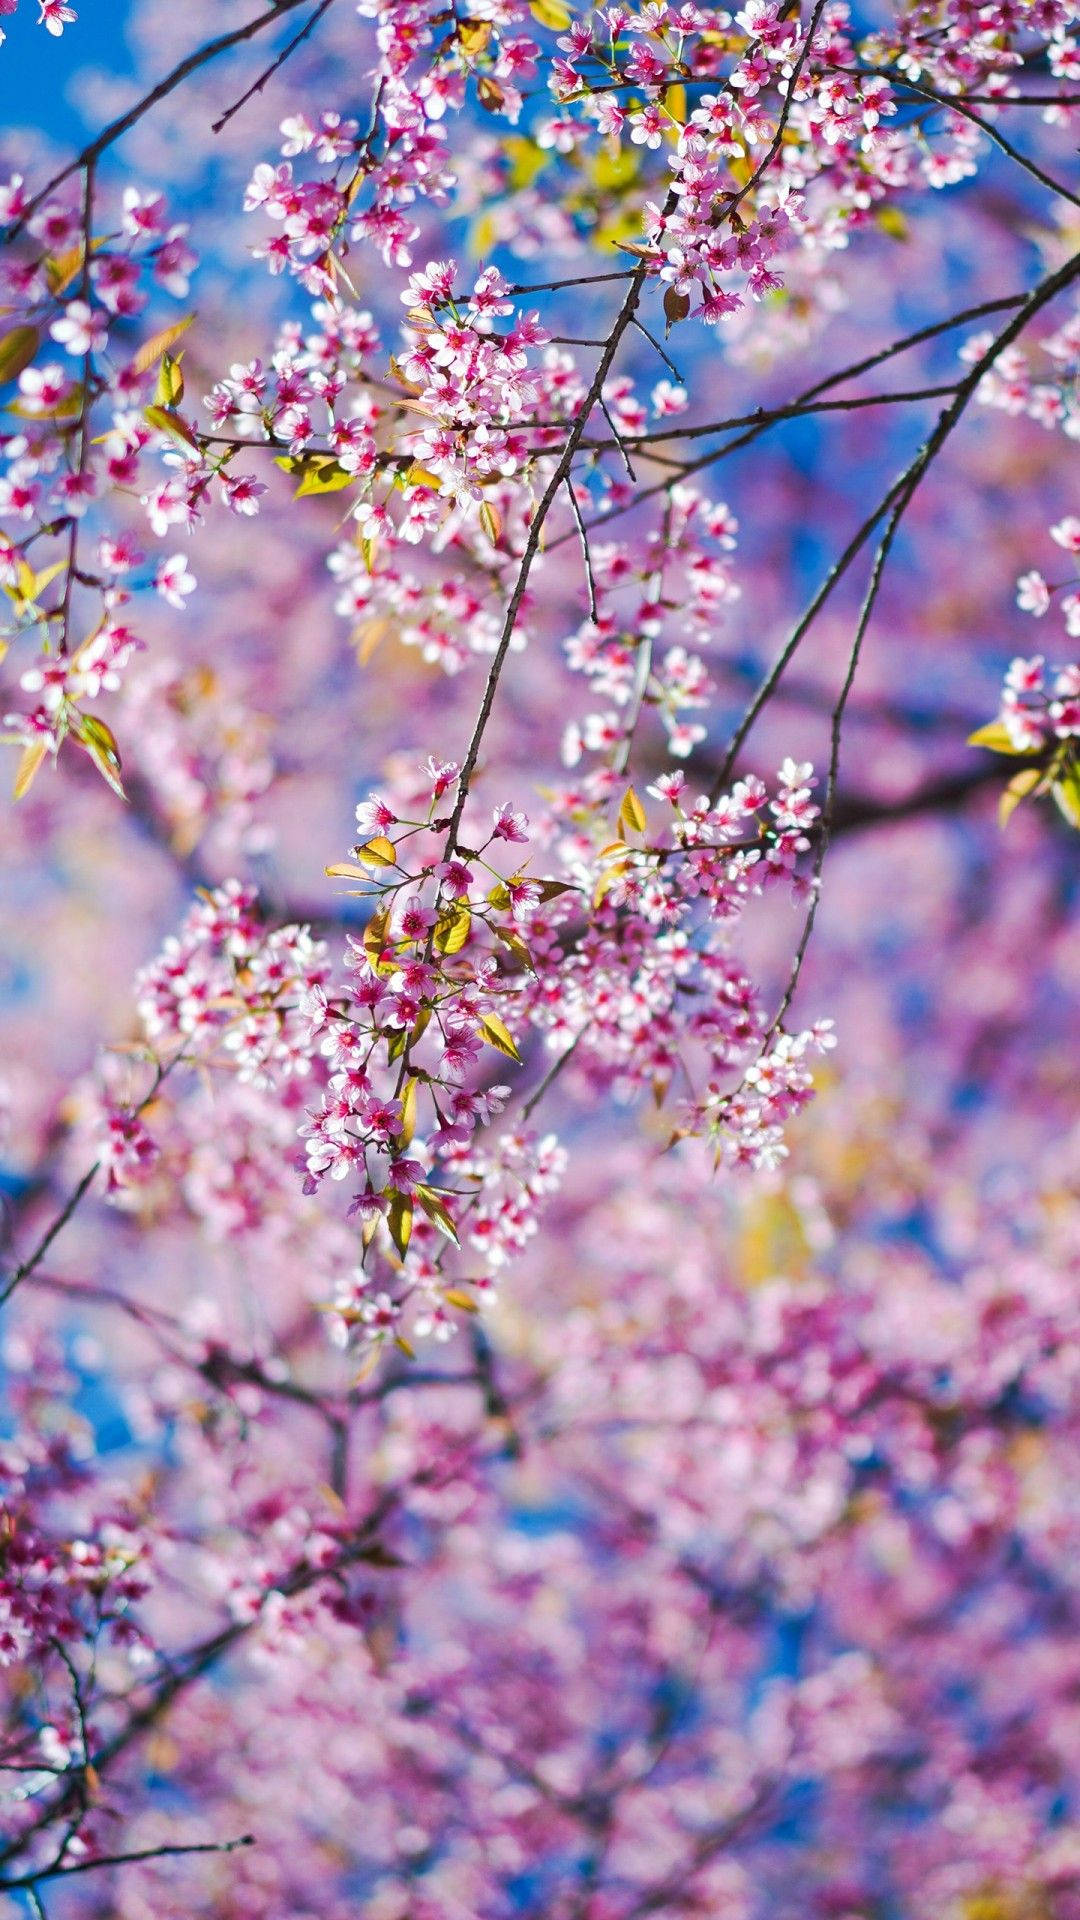 Disfrutala Belleza De Las Flores De Primavera Con Este Hermoso Fondo De Pantalla De Flores De Primavera Para Iphone. Fondo de pantalla